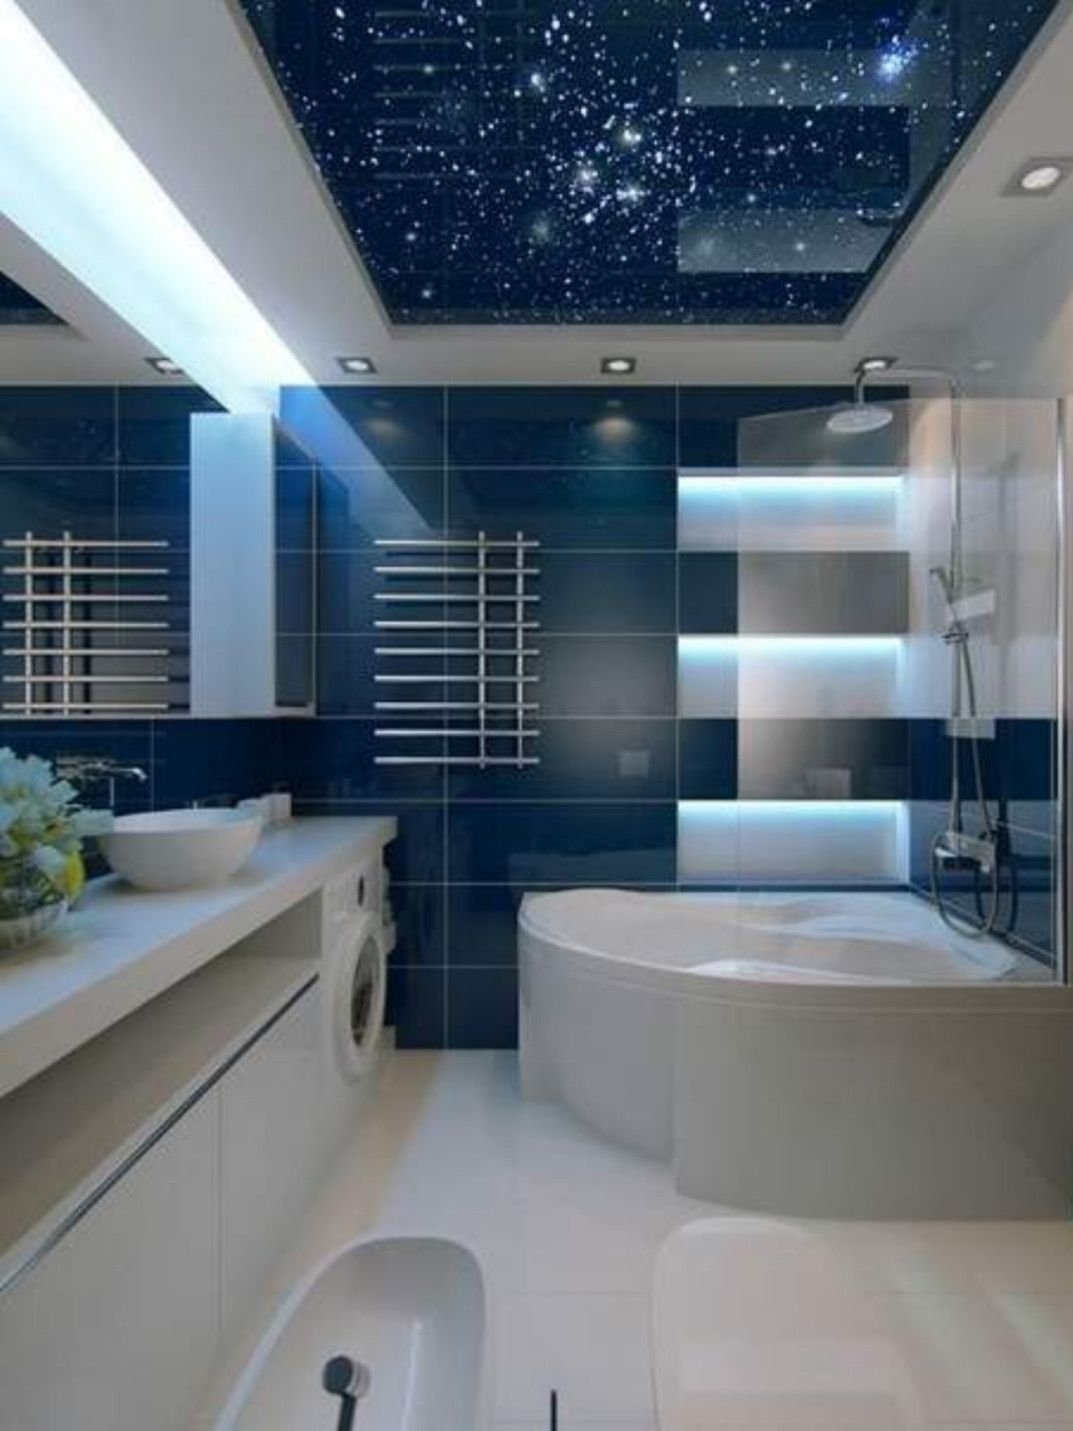 Ремонт новой ванны. Натяжной потолок в ванней. Ванная комната. Красивая ванная комната. Натяжеойпотооок в ванной.